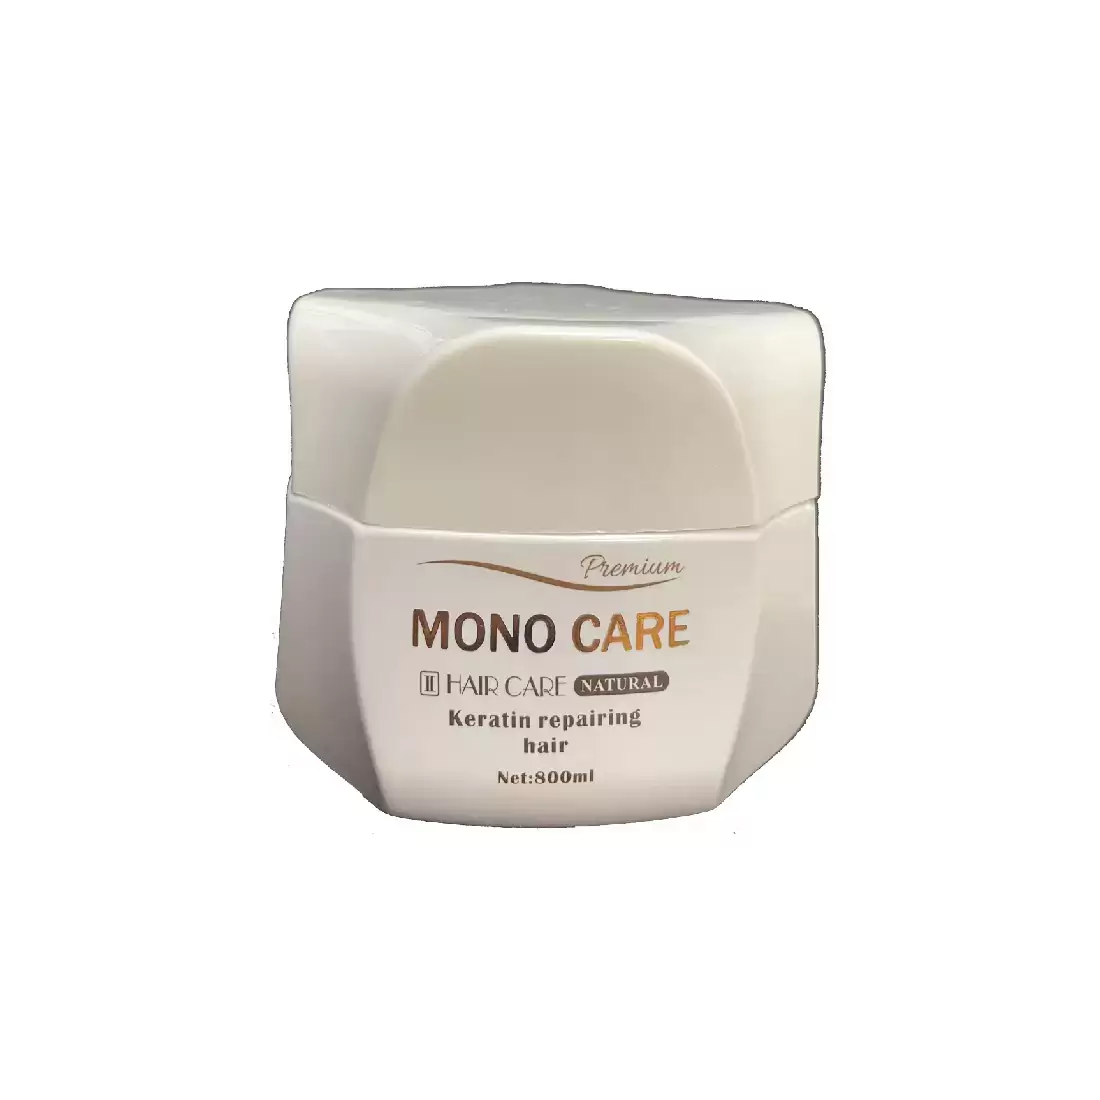 ماسک کراتین Mono Care-ماسک ترمیم کراتین موی مونوکر-ماسک موی کراتینه مونوکر-ماسک کراتینه Mono Care-ماسک ترمیم کراتین Mono Care